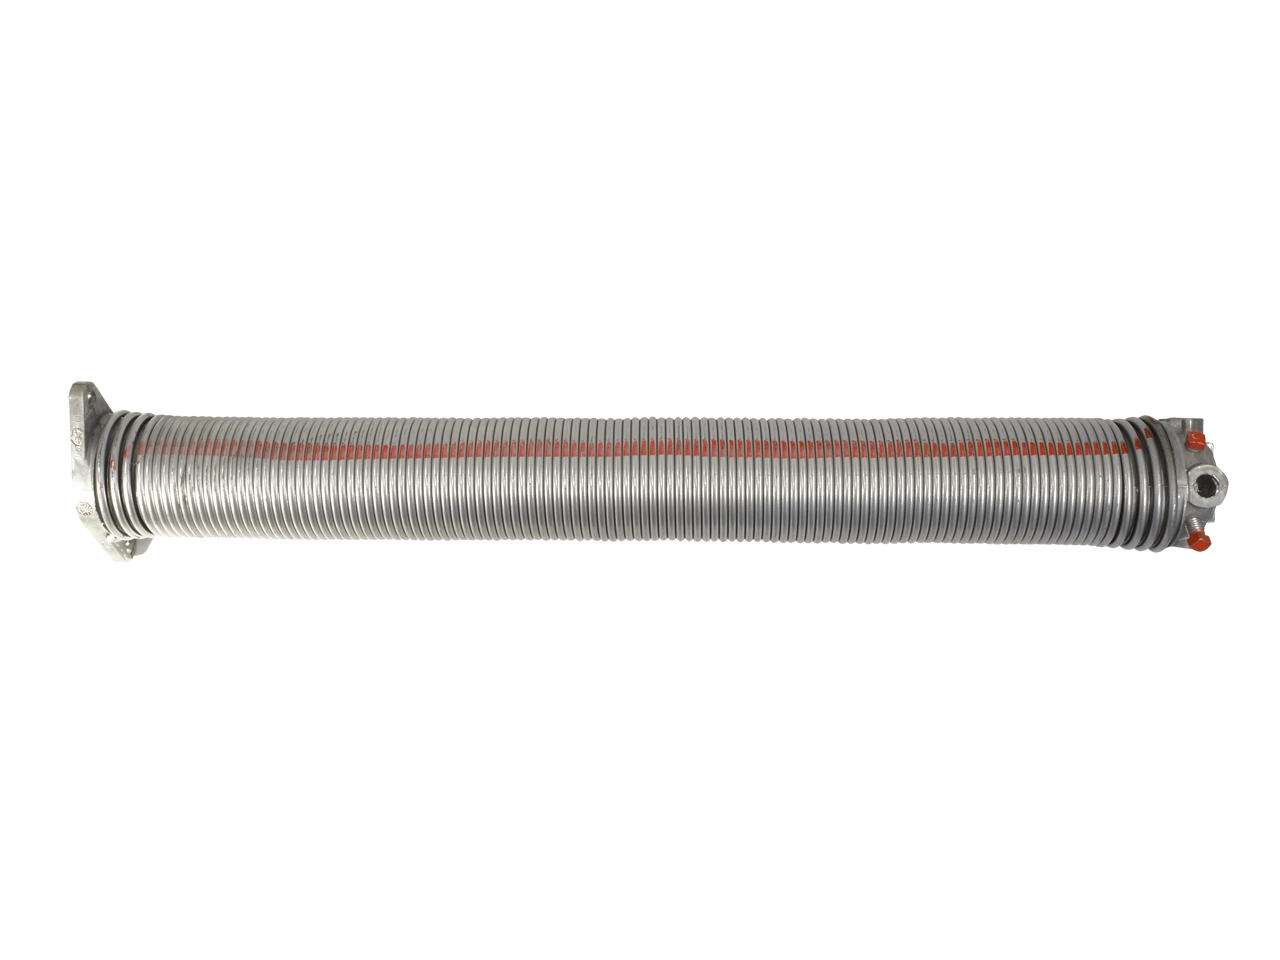 Torfeder, Innendurchmesser 67 mm, Drahtstärke 6 mm, Windung Links, mit Köpfen für Welle 25,4mm